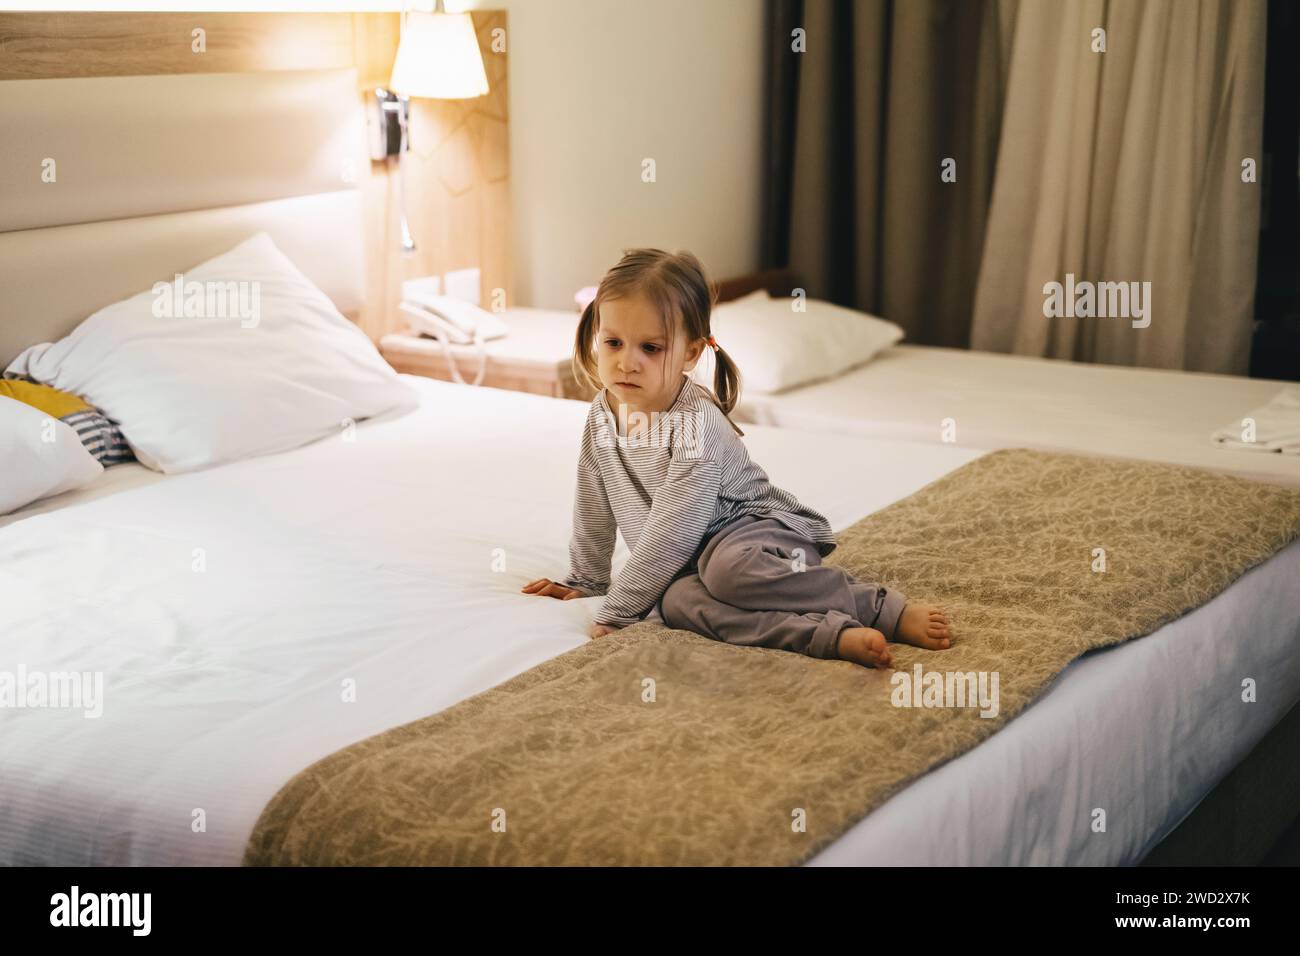 Jeune fille fatiguée assise dans la chambre d'hôtel sur le lit le soir. Avant le coucher enfant triste attendant de dormir. Banque D'Images